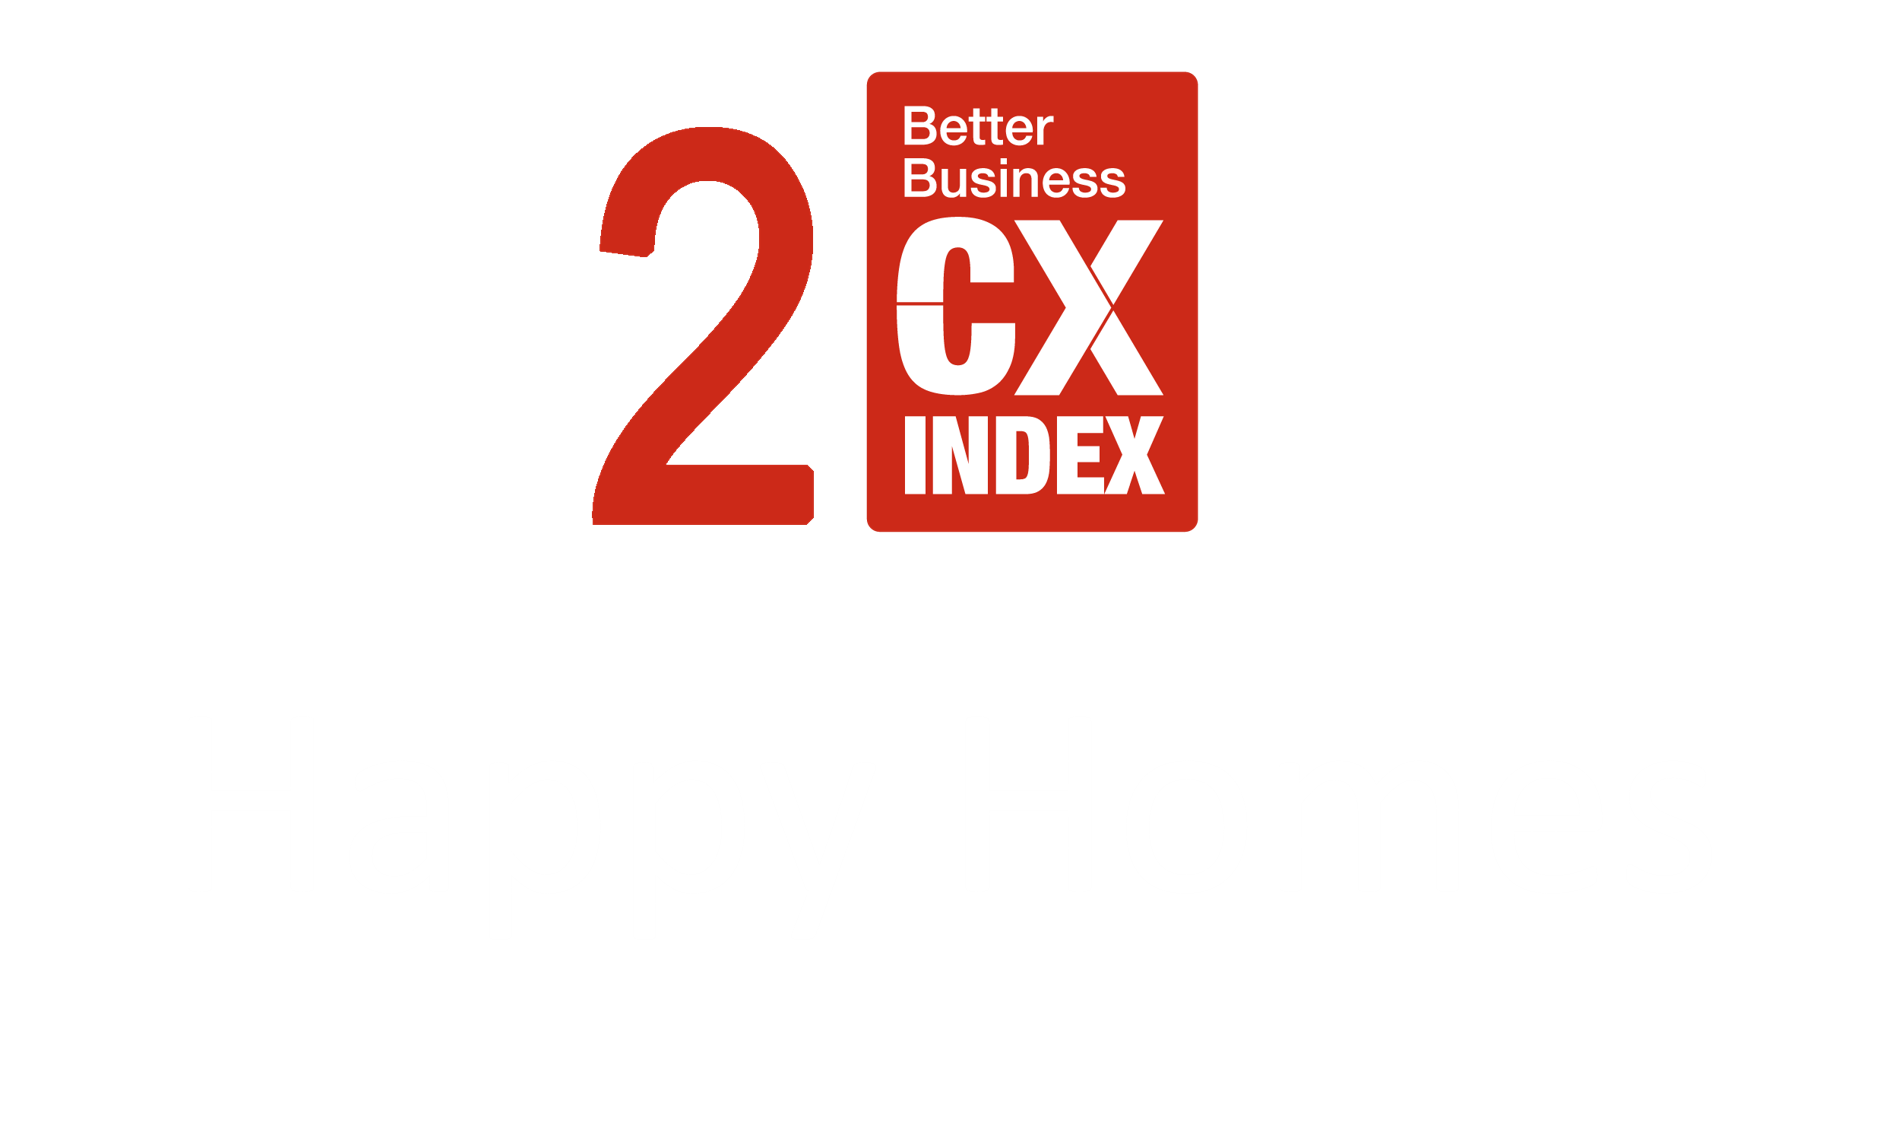 2 CX index